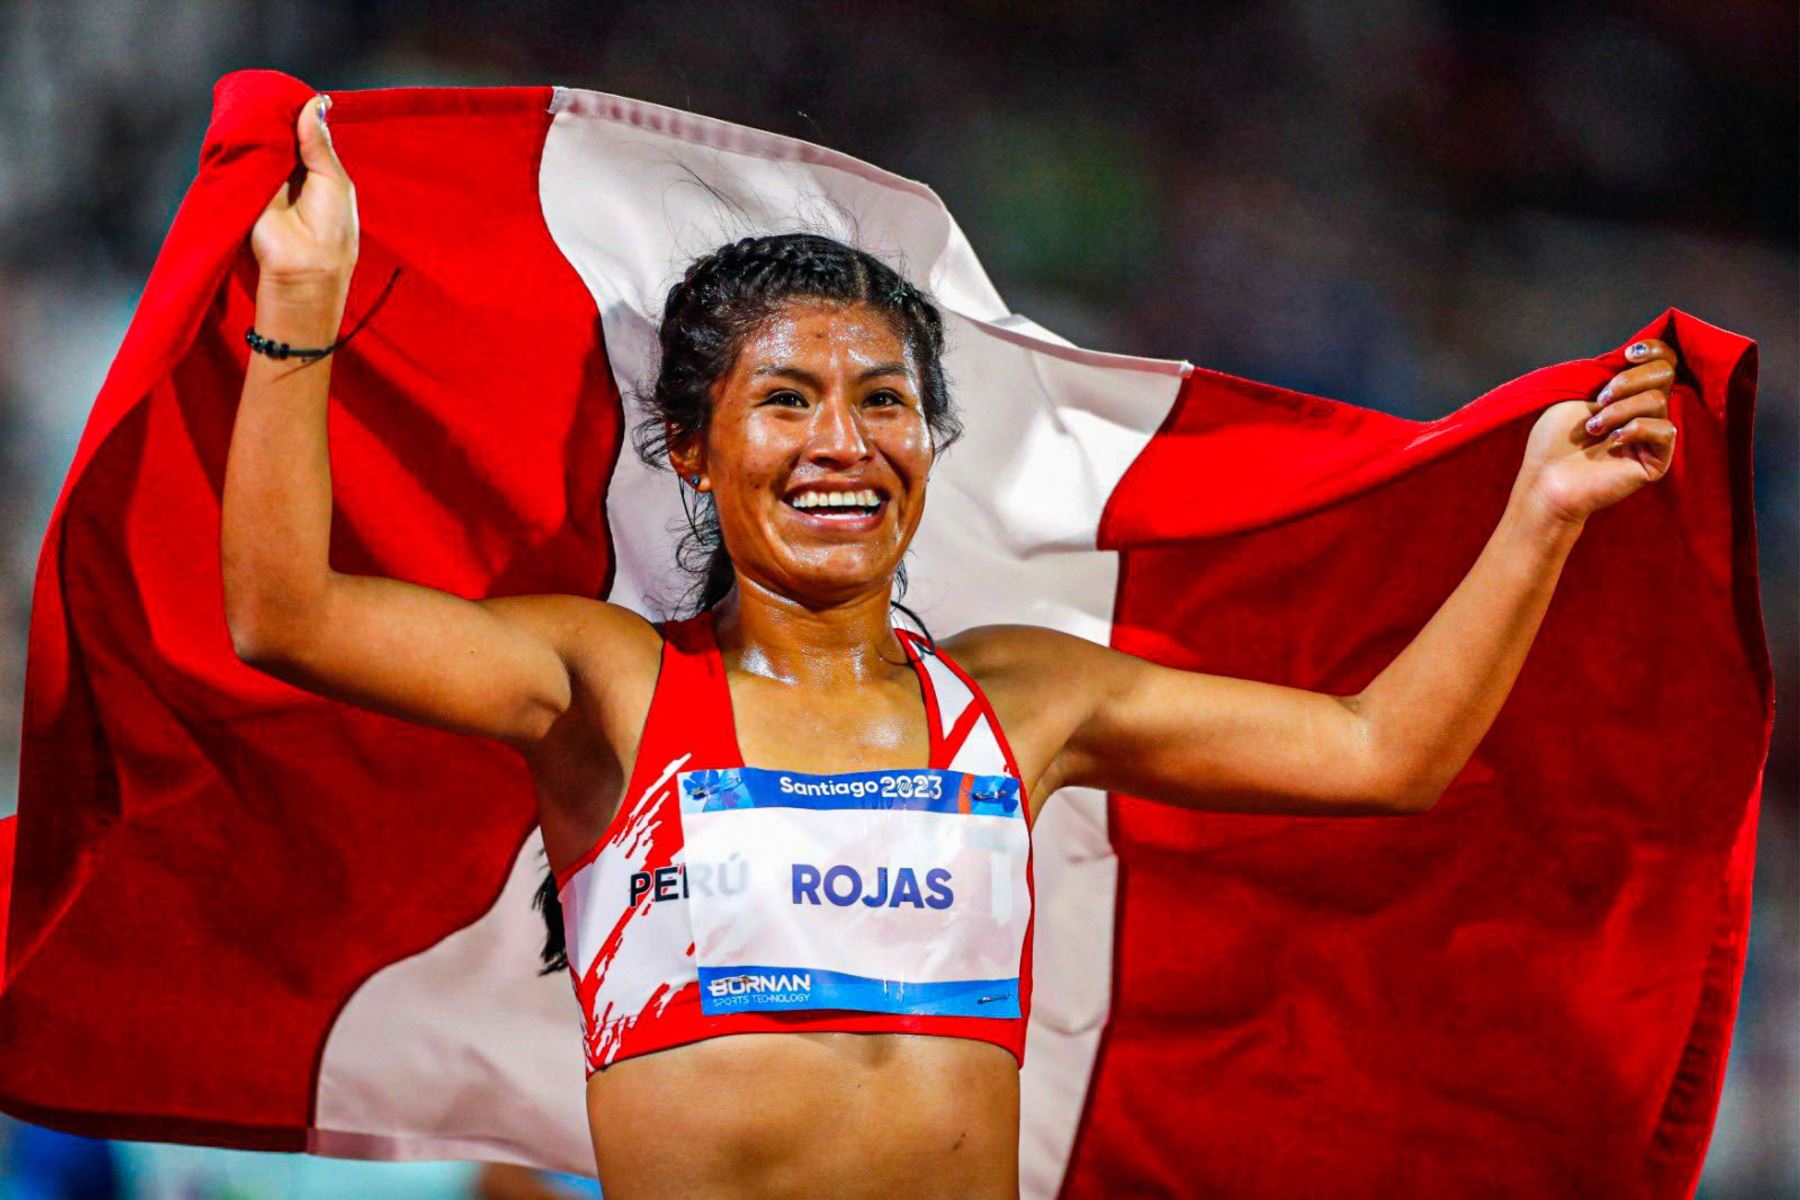 Maratón de Sevilla: Siete peruanos entre los atletas de elite